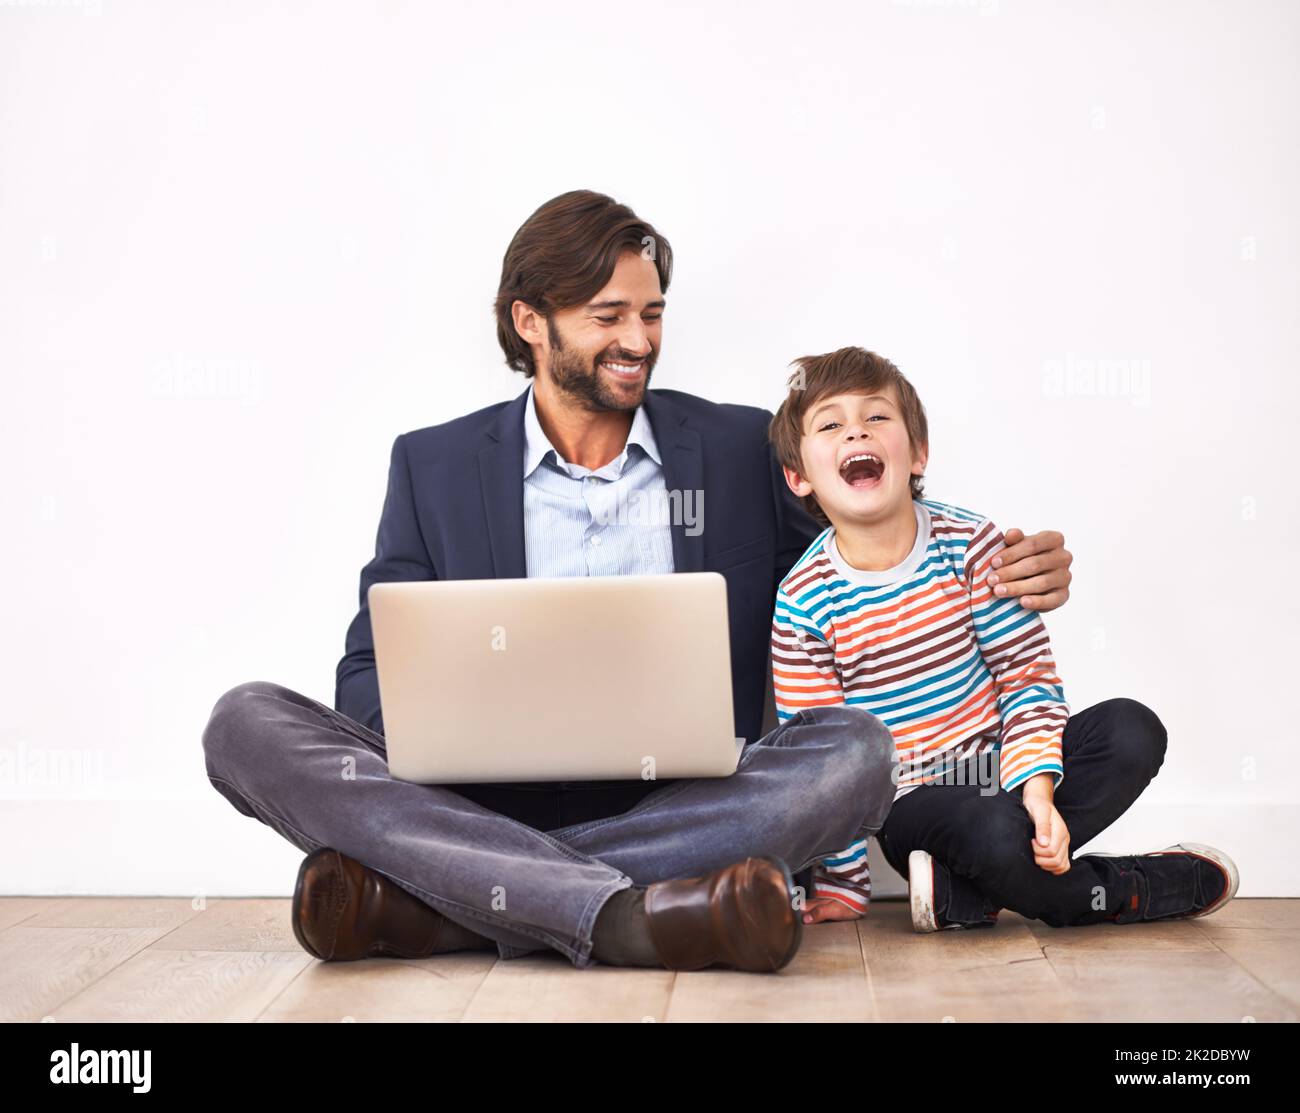 Godendo alcuni video in linea divertenti. Un padre e un figlio seduti a terra con un computer portatile. Foto Stock